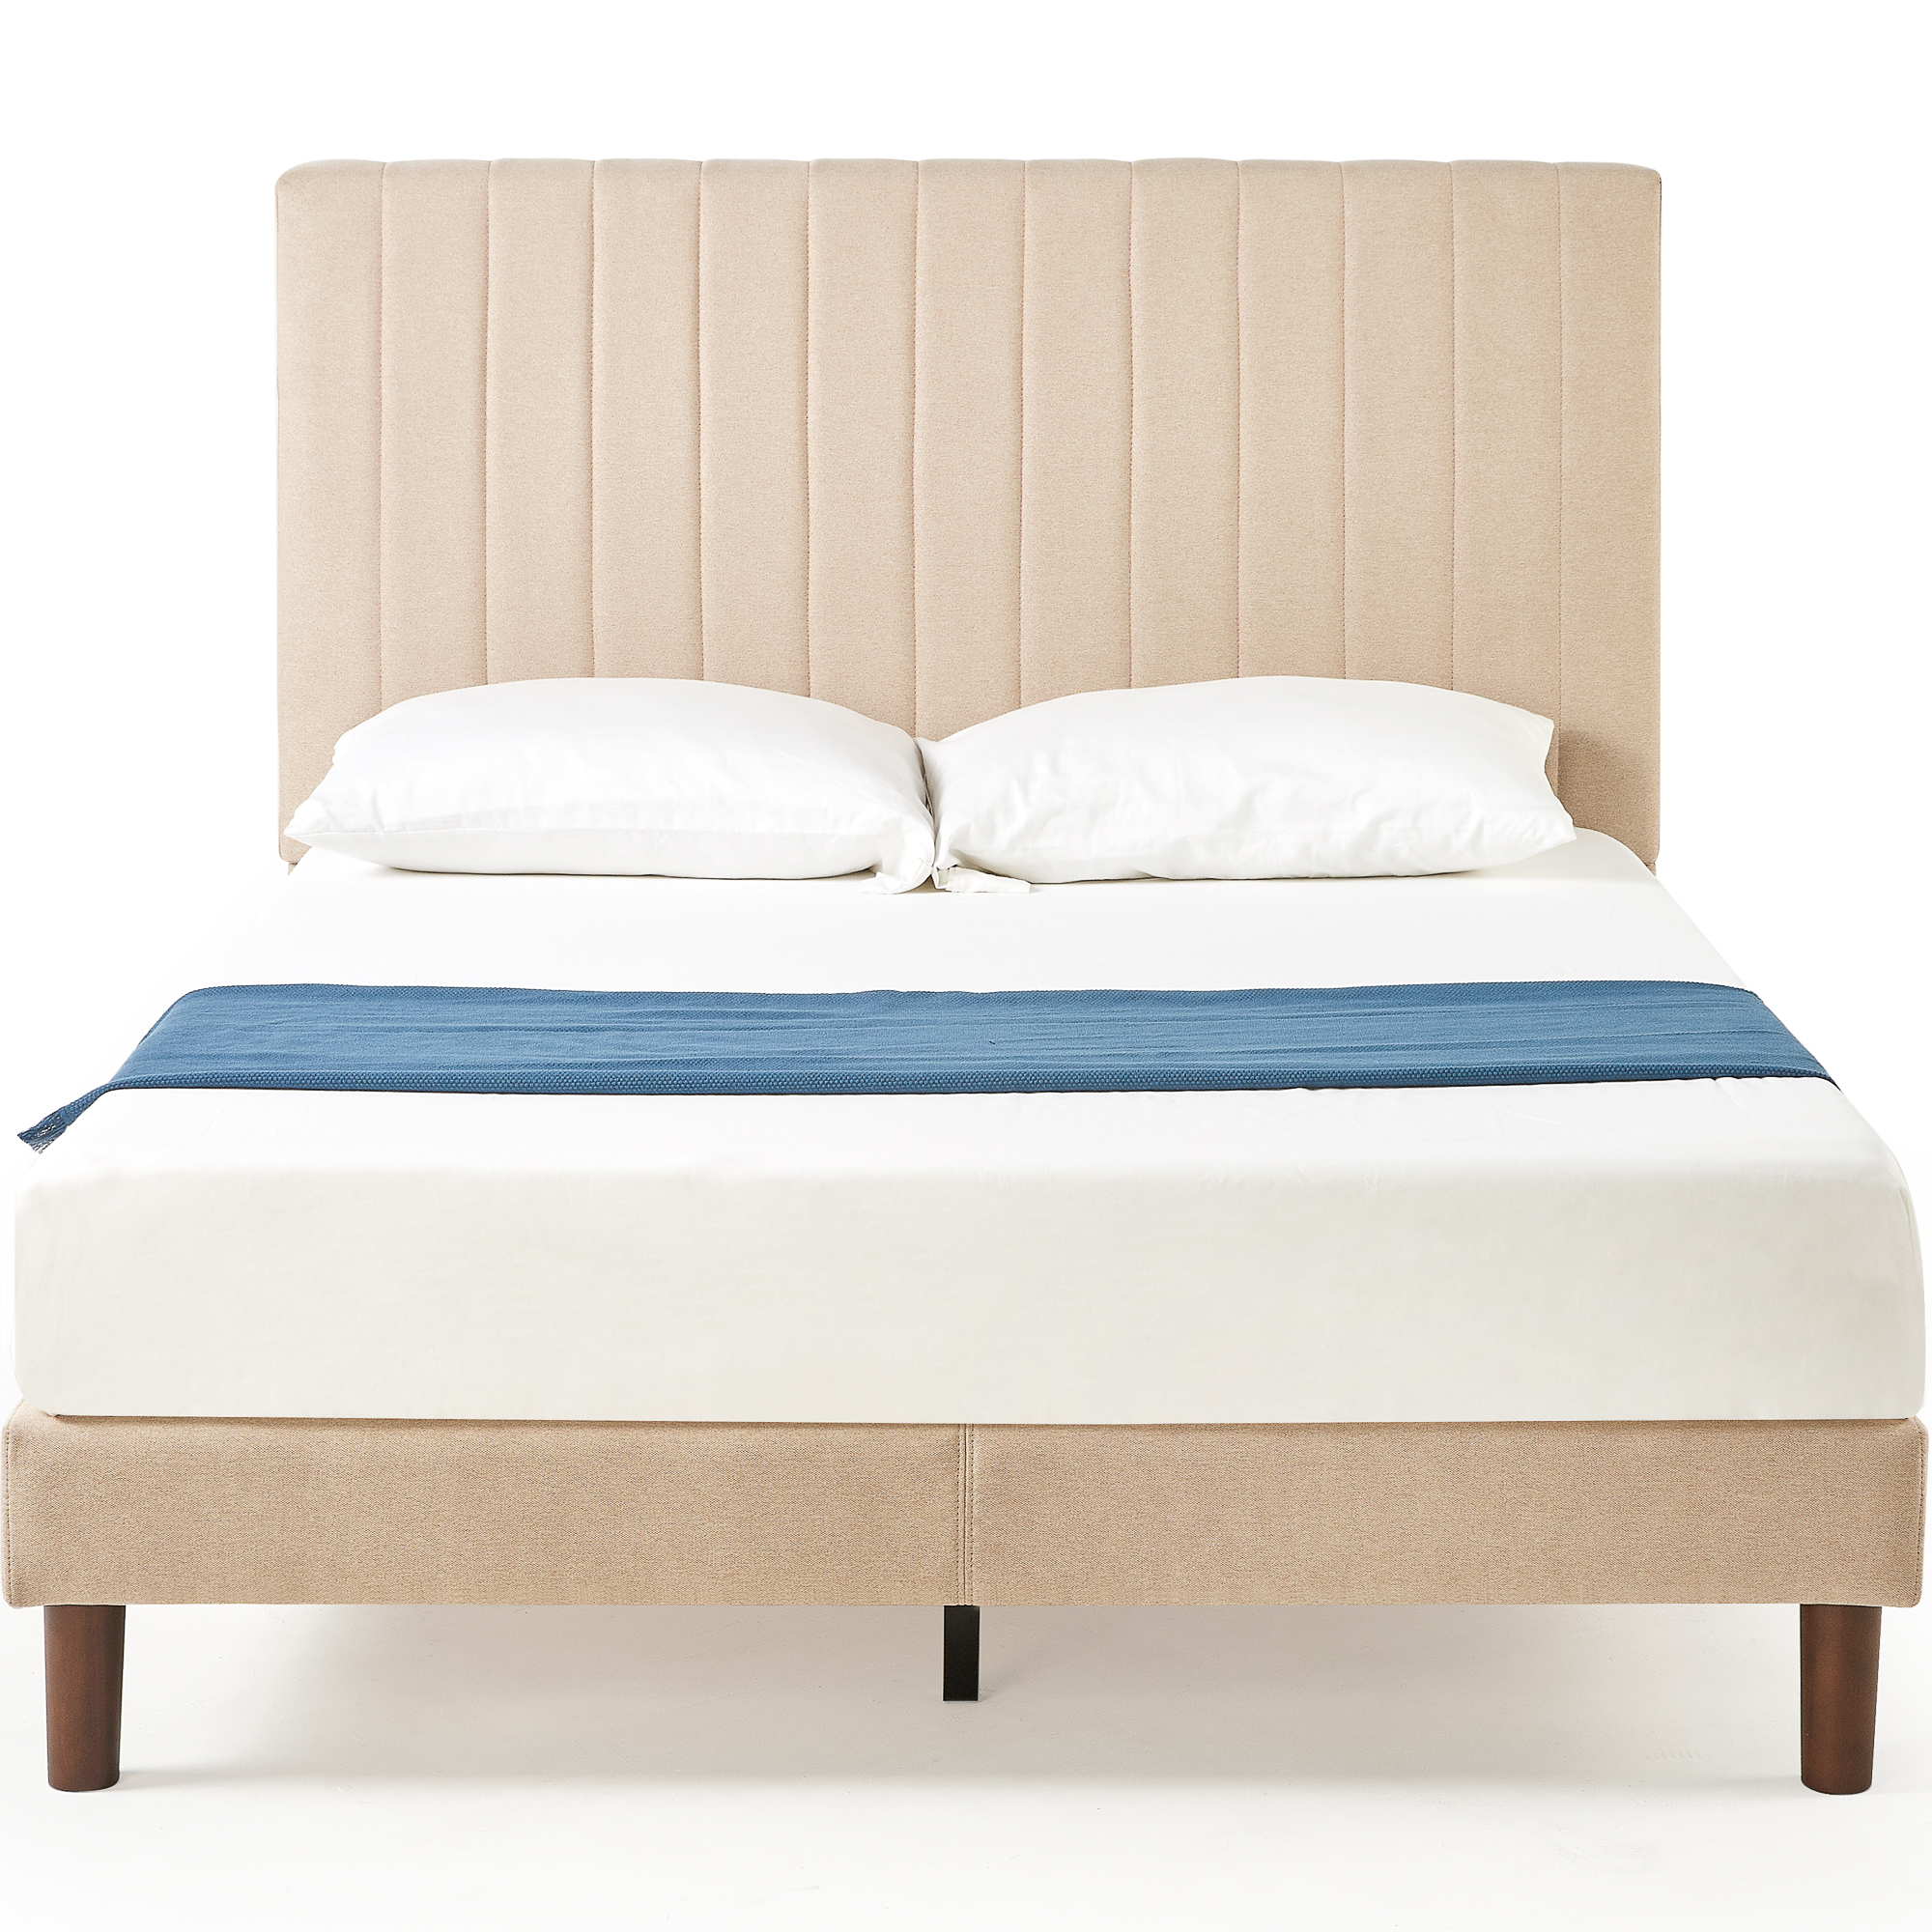 Zinus Debi 51” Upholstered Platform Bed Frame, Full, Beige - image 1 of 9